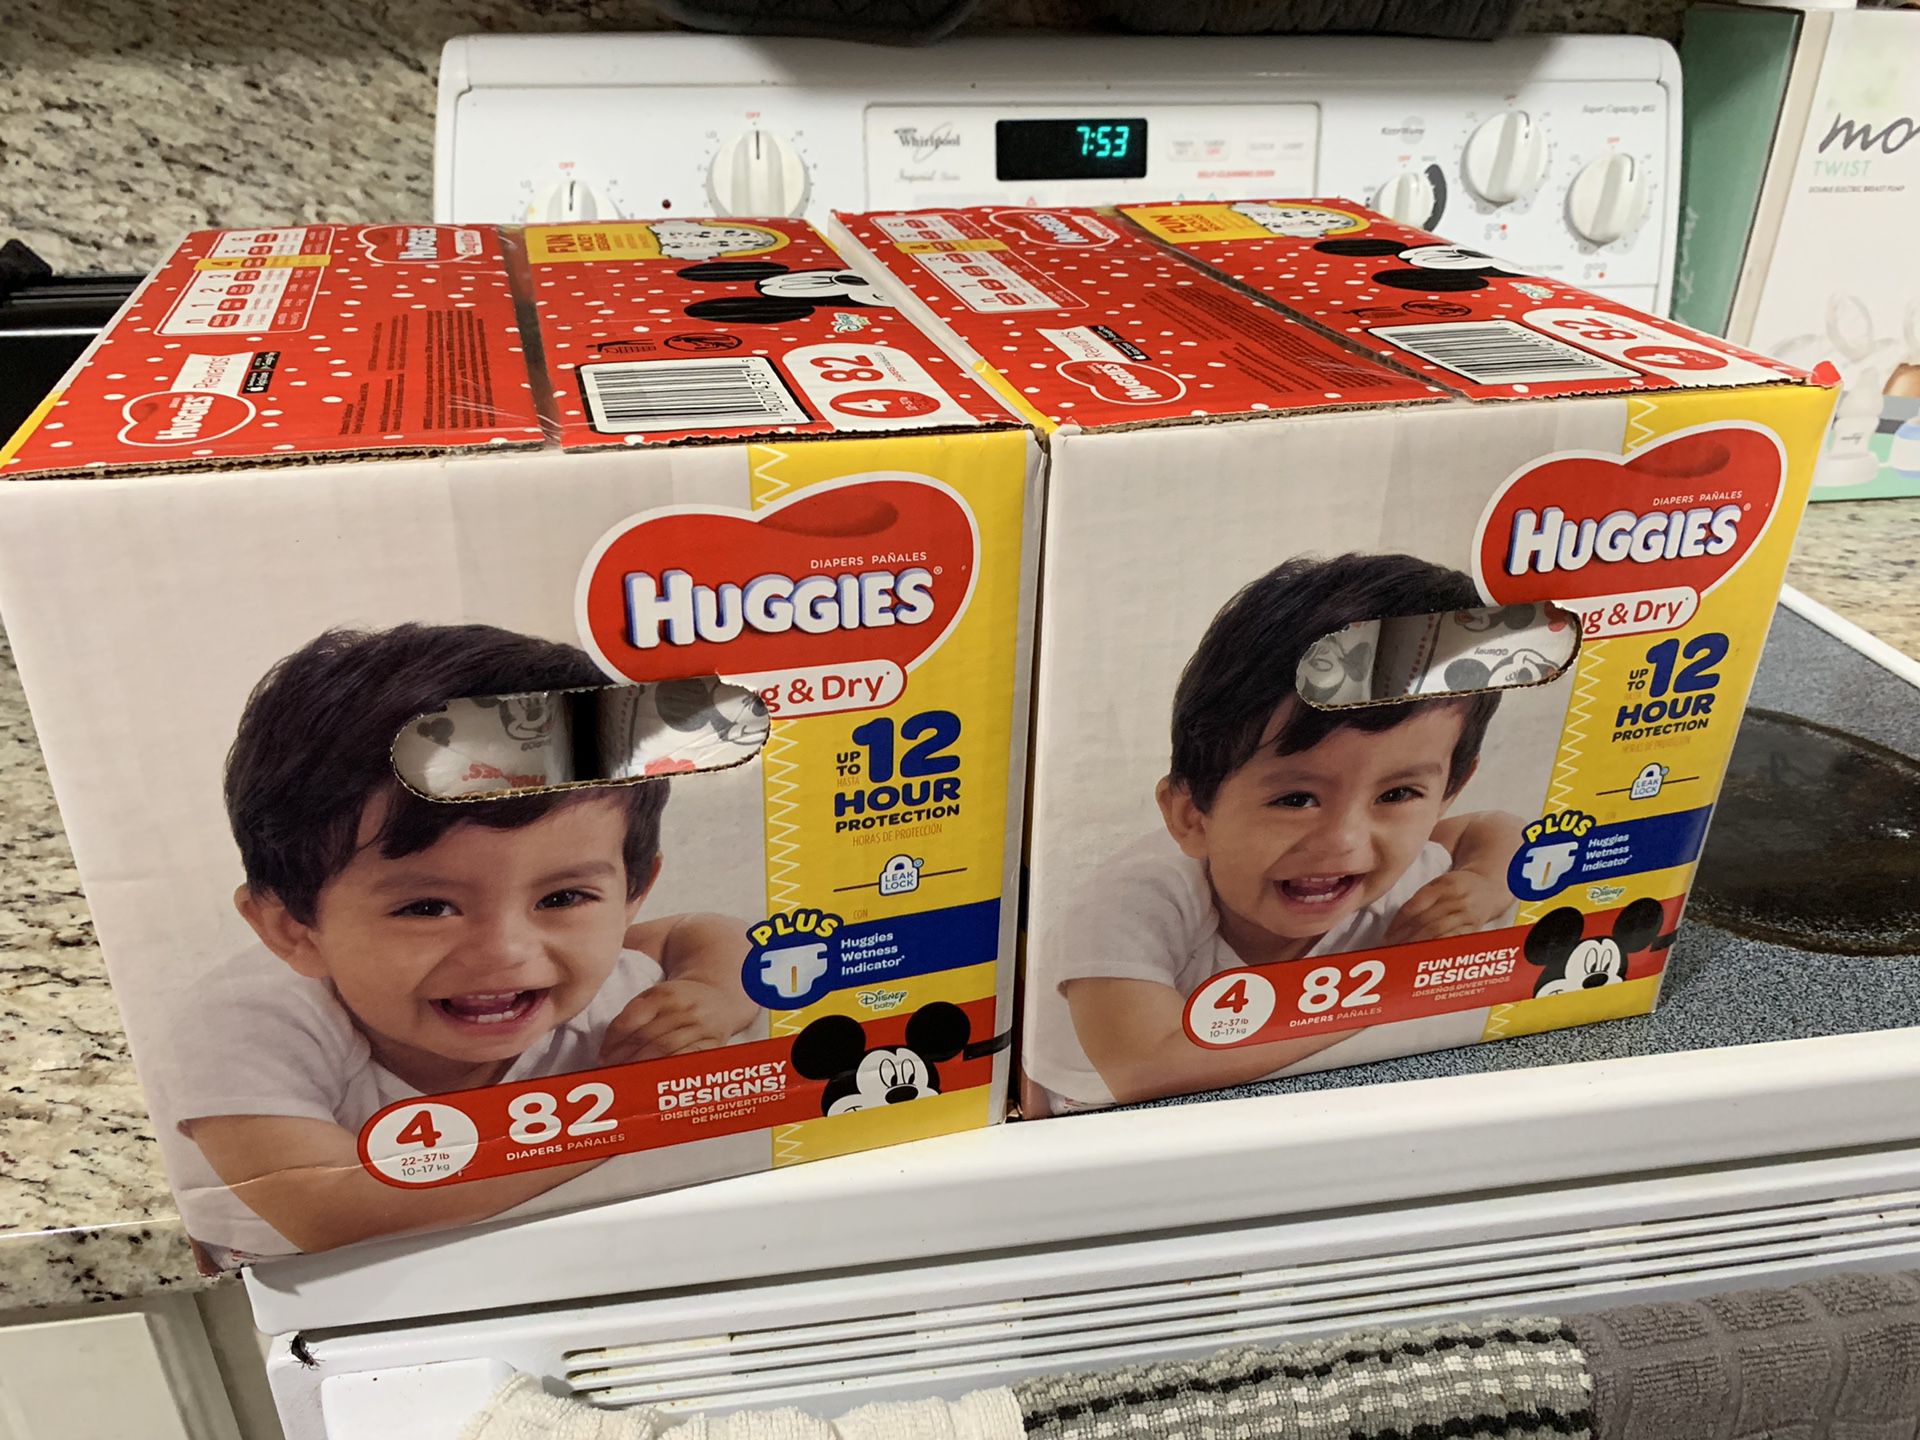 Huggies diaper boxes